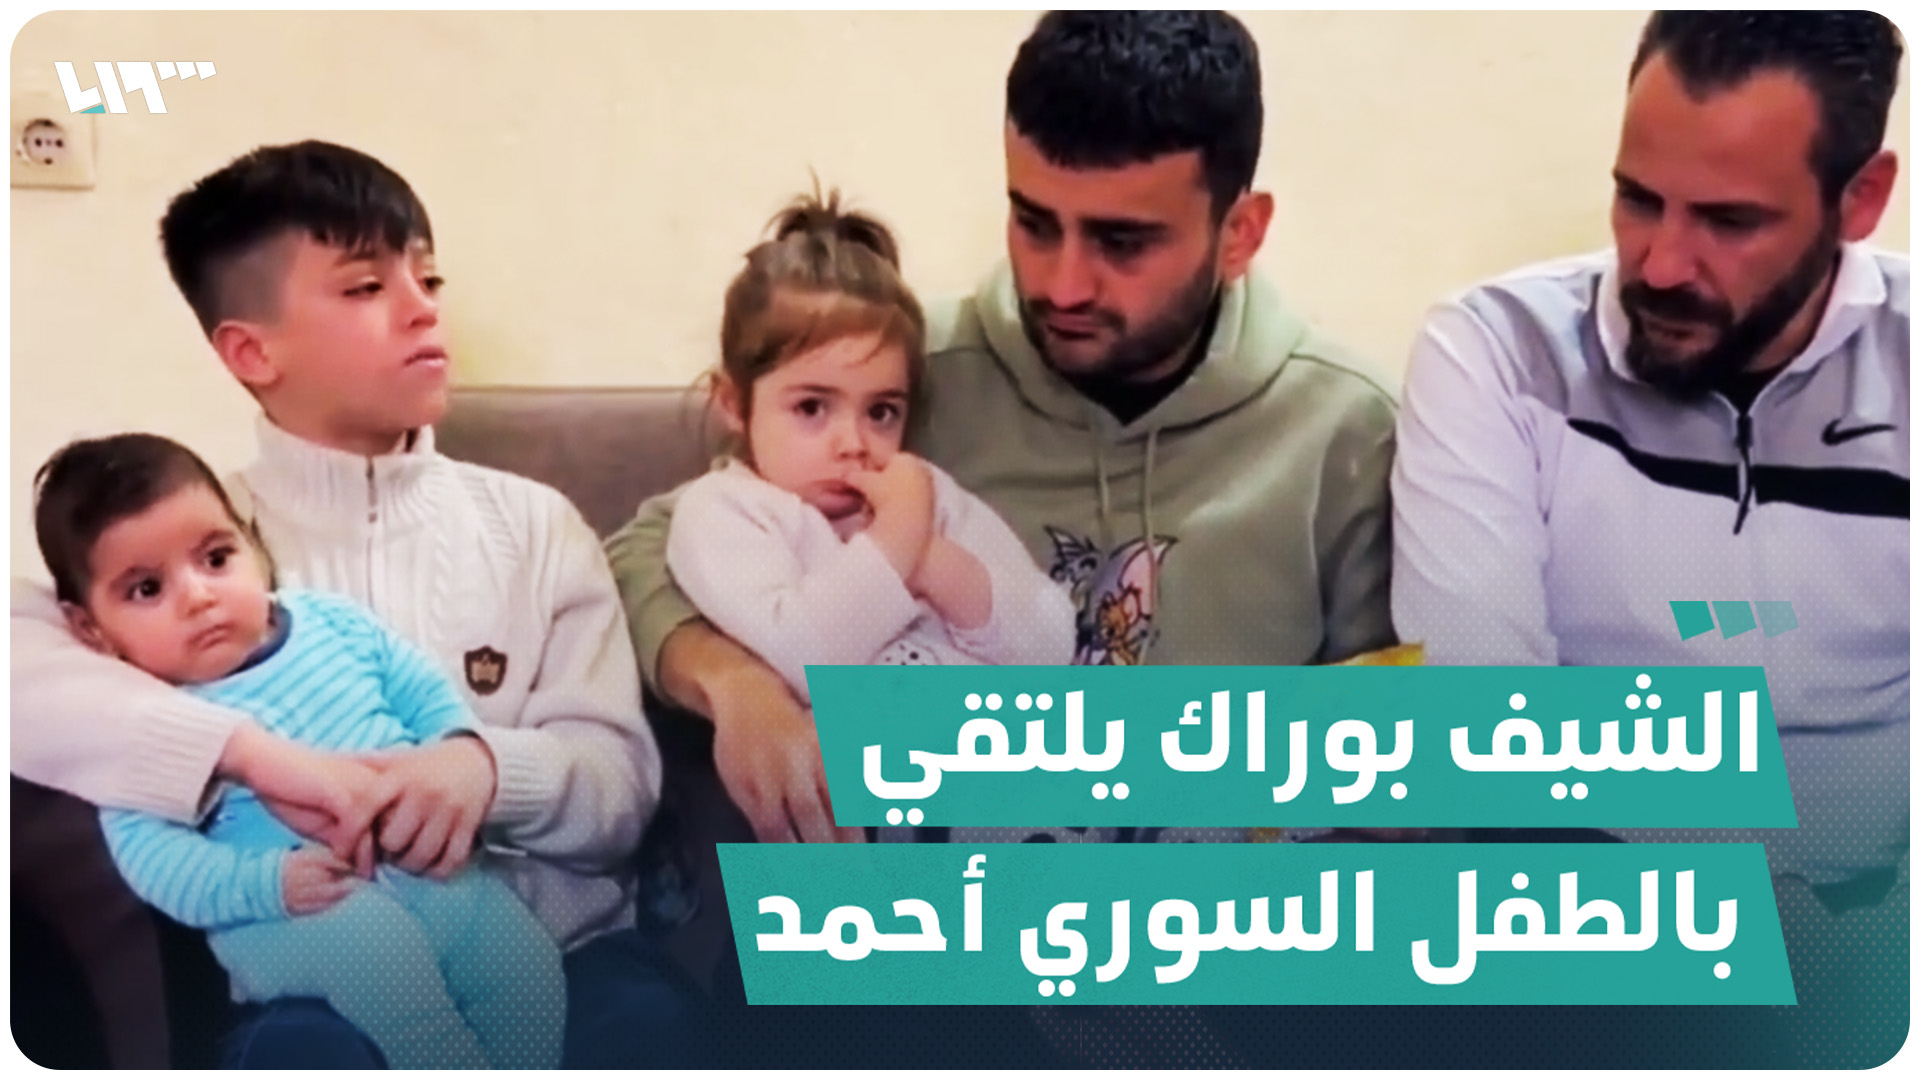 الشيف التركي الشهير "بوراك" يلتقي الطفل السوري أحمد